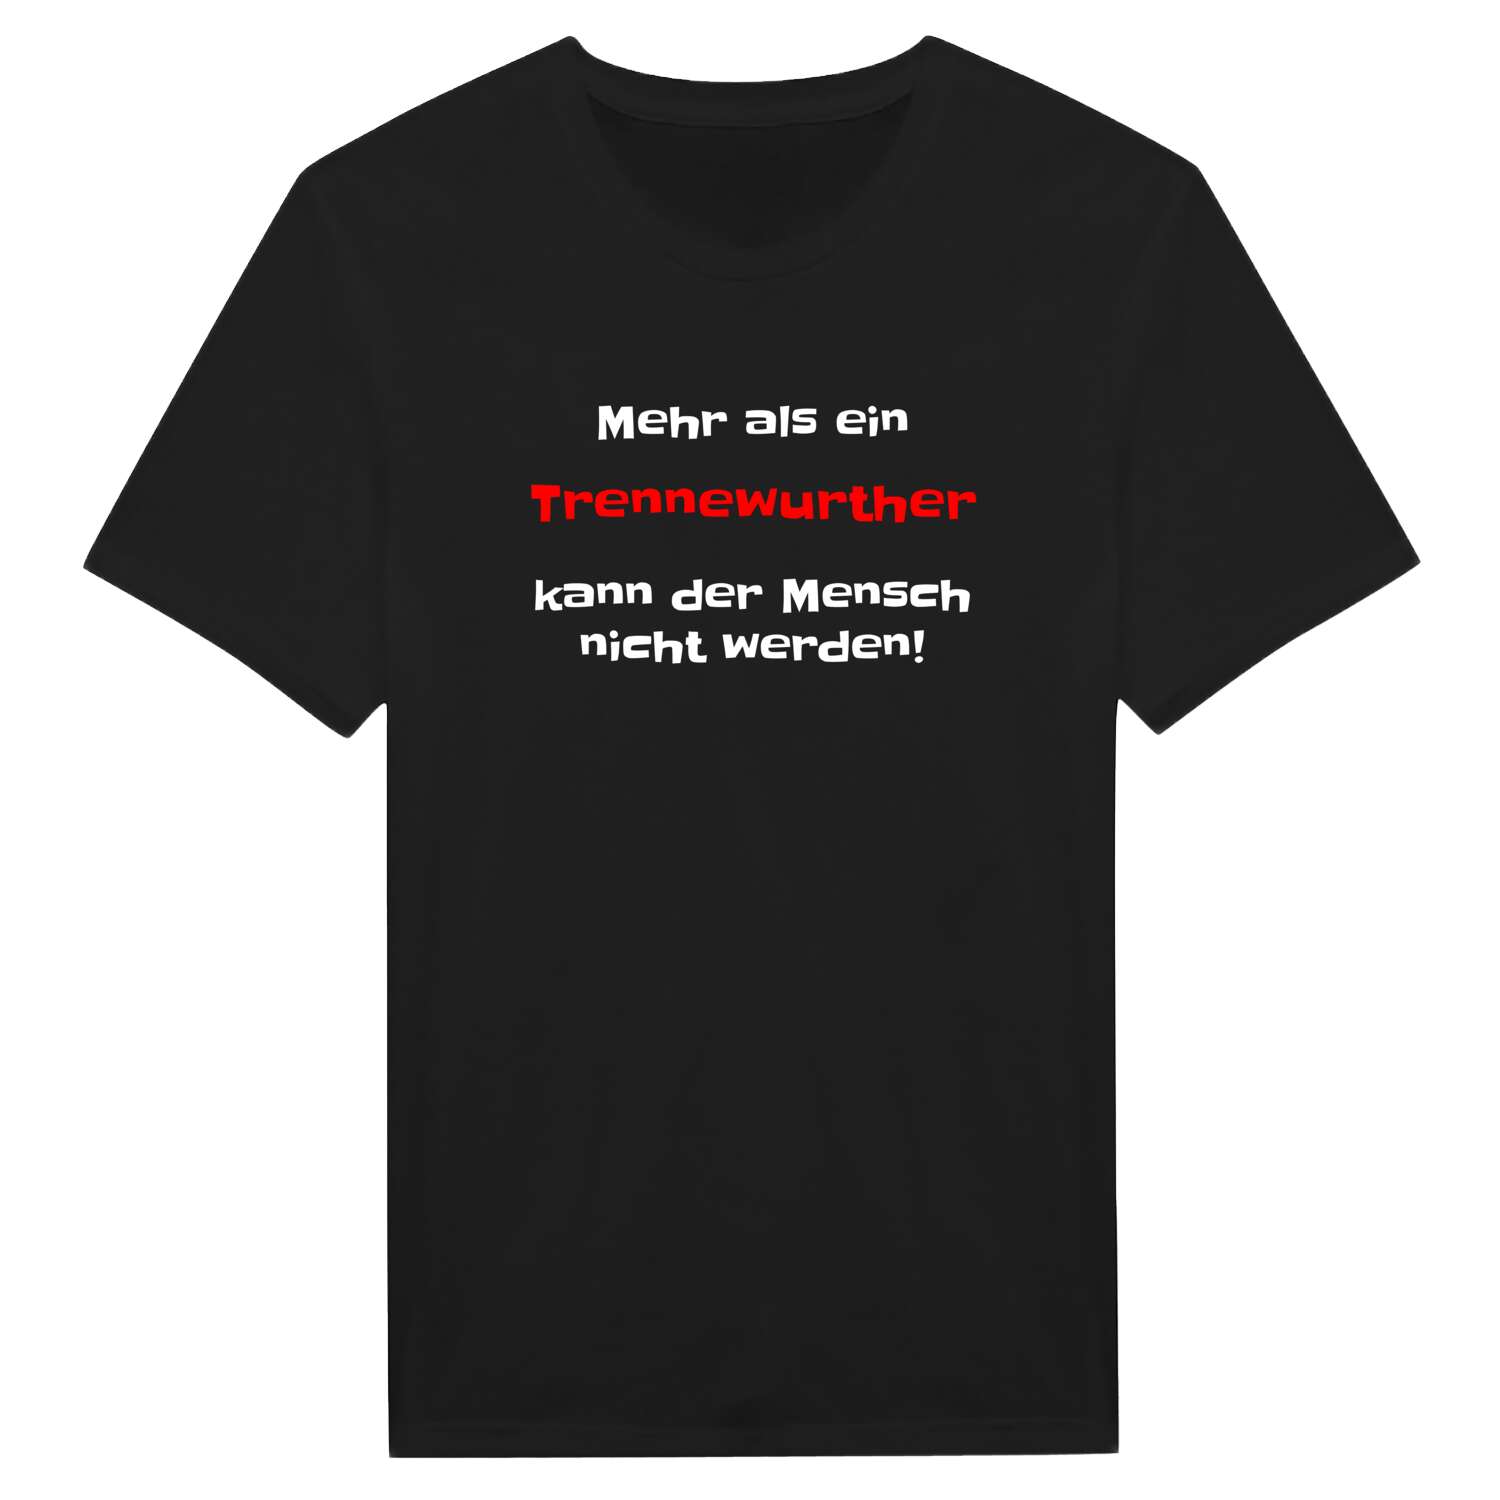 Trennewurth T-Shirt »Mehr als ein«